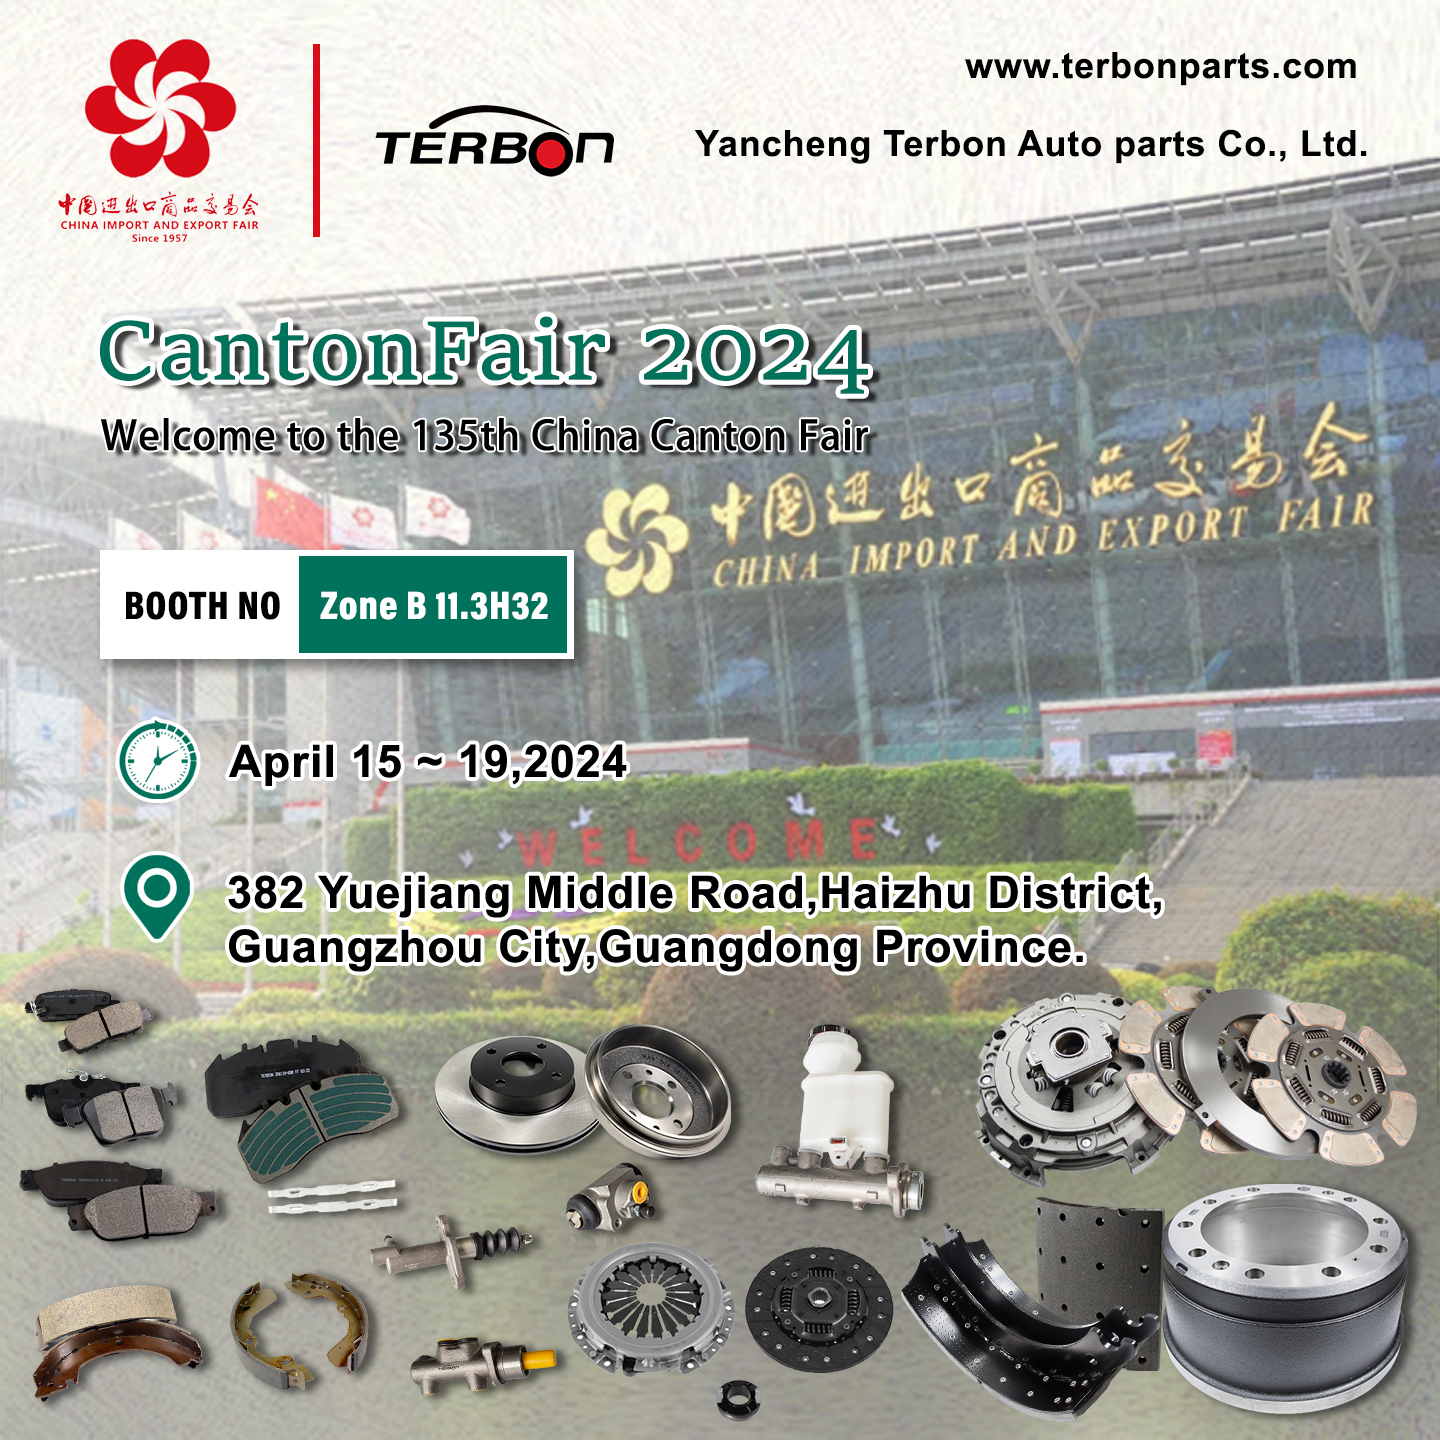 YanCheng Terbon Auto Parts Company estende l'invitu cordiale à i Partenarii Globali